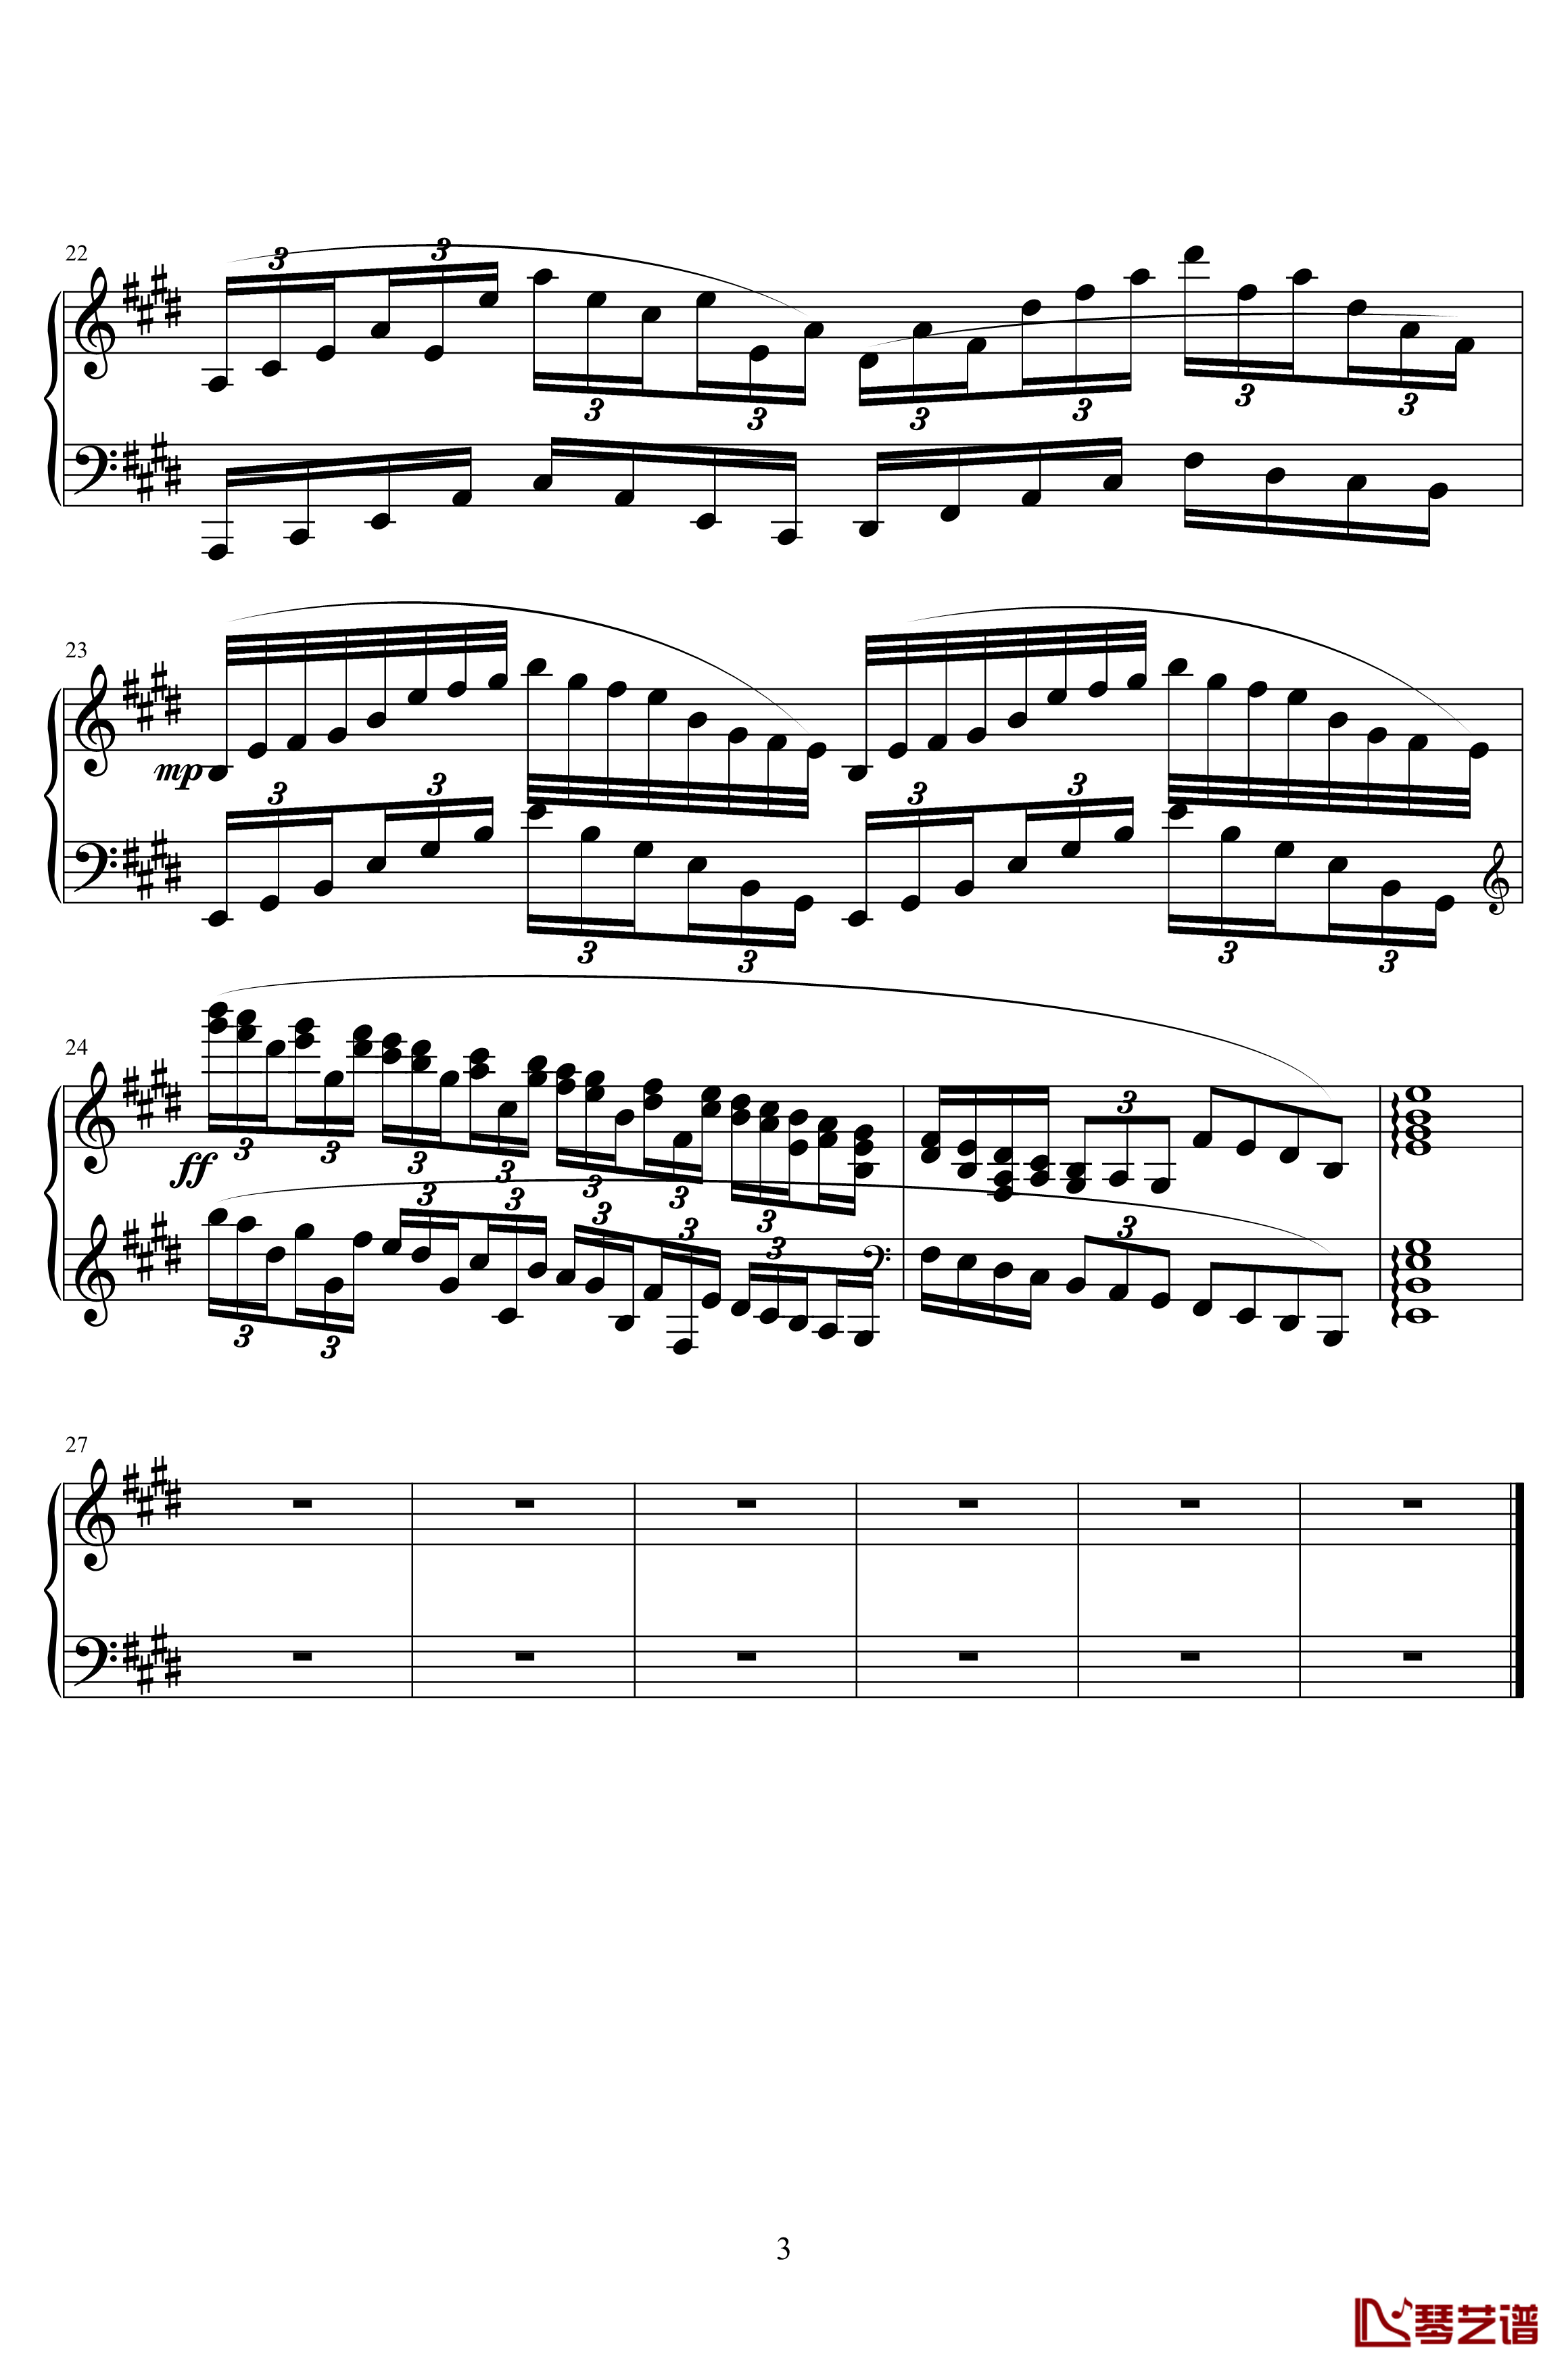 海洋钢琴谱-练习曲第一首-hrmc